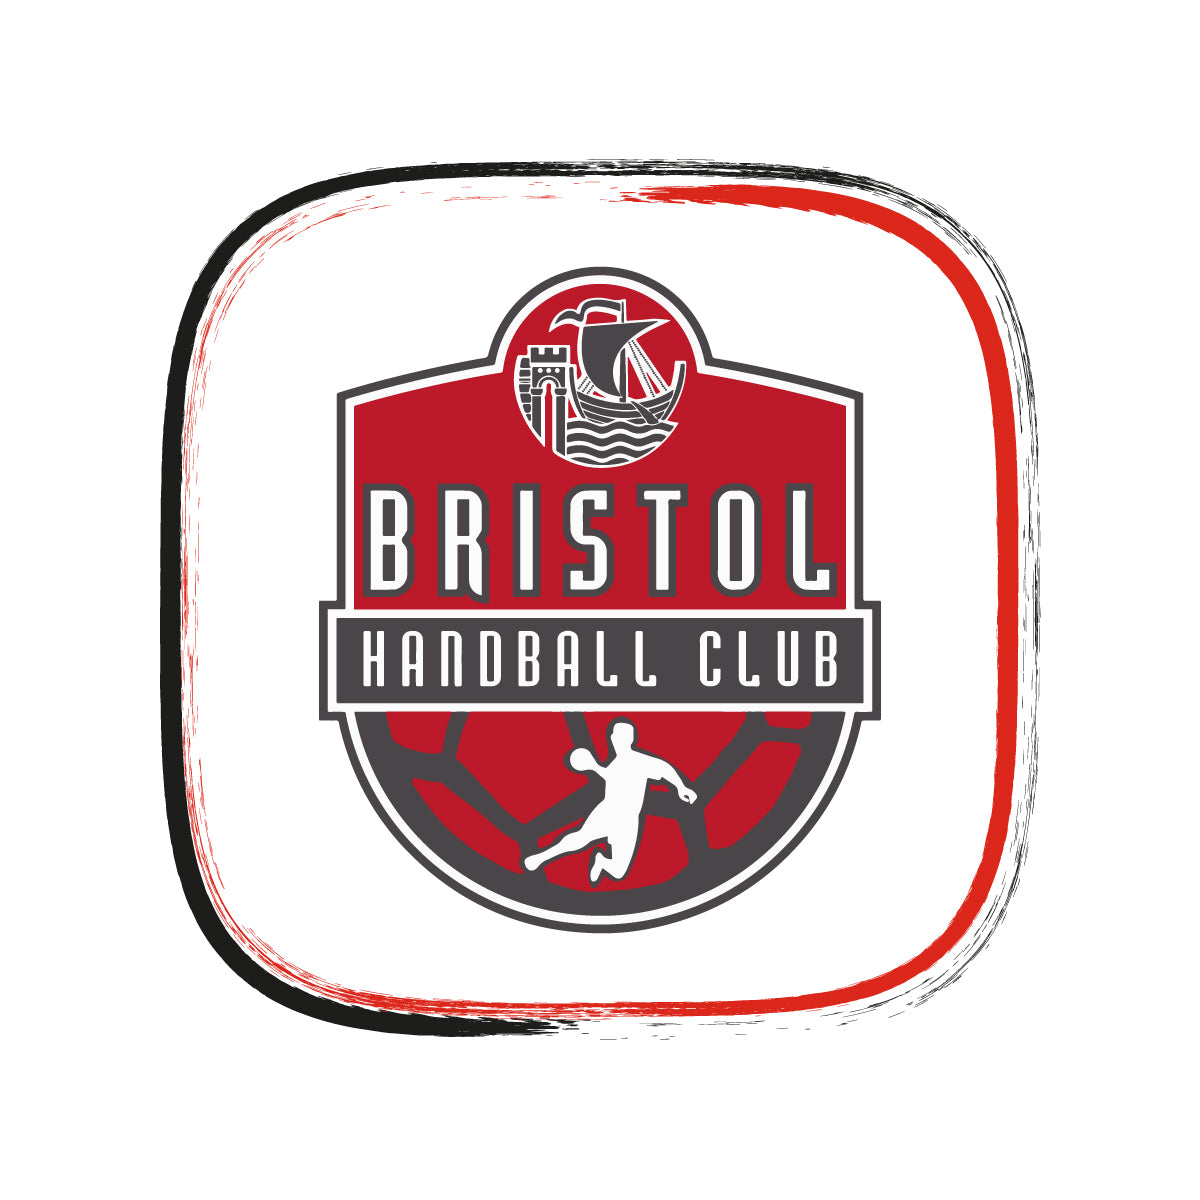 Bristol Handball